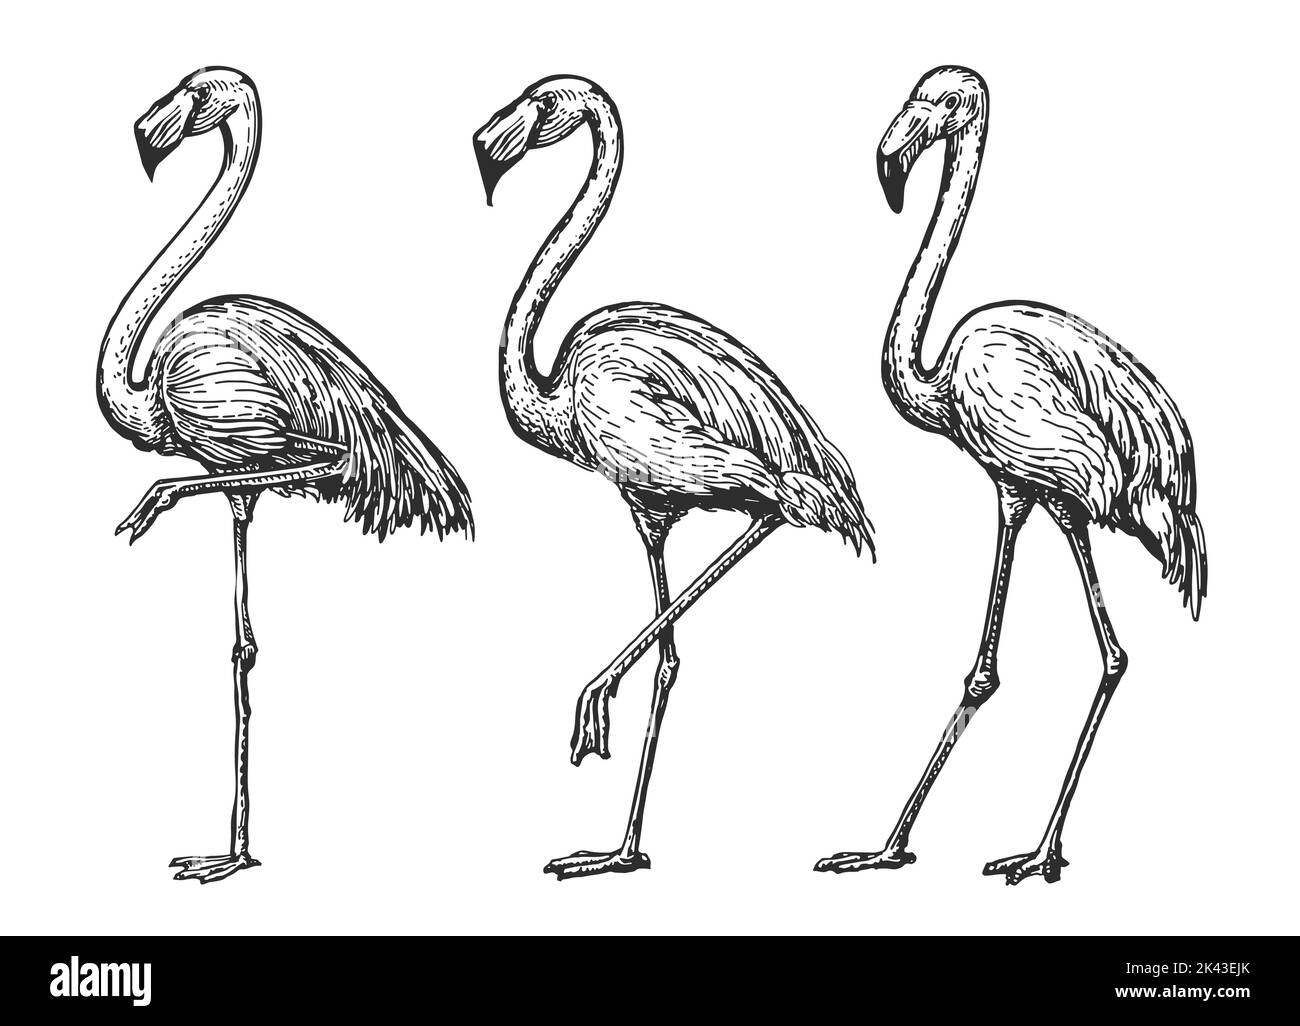 Croquis Flamingo. Conjunto de aves tropicales exóticas. Ilustración de vectores de animales silvestres aislados en estilo grabado vintage Ilustración del Vector